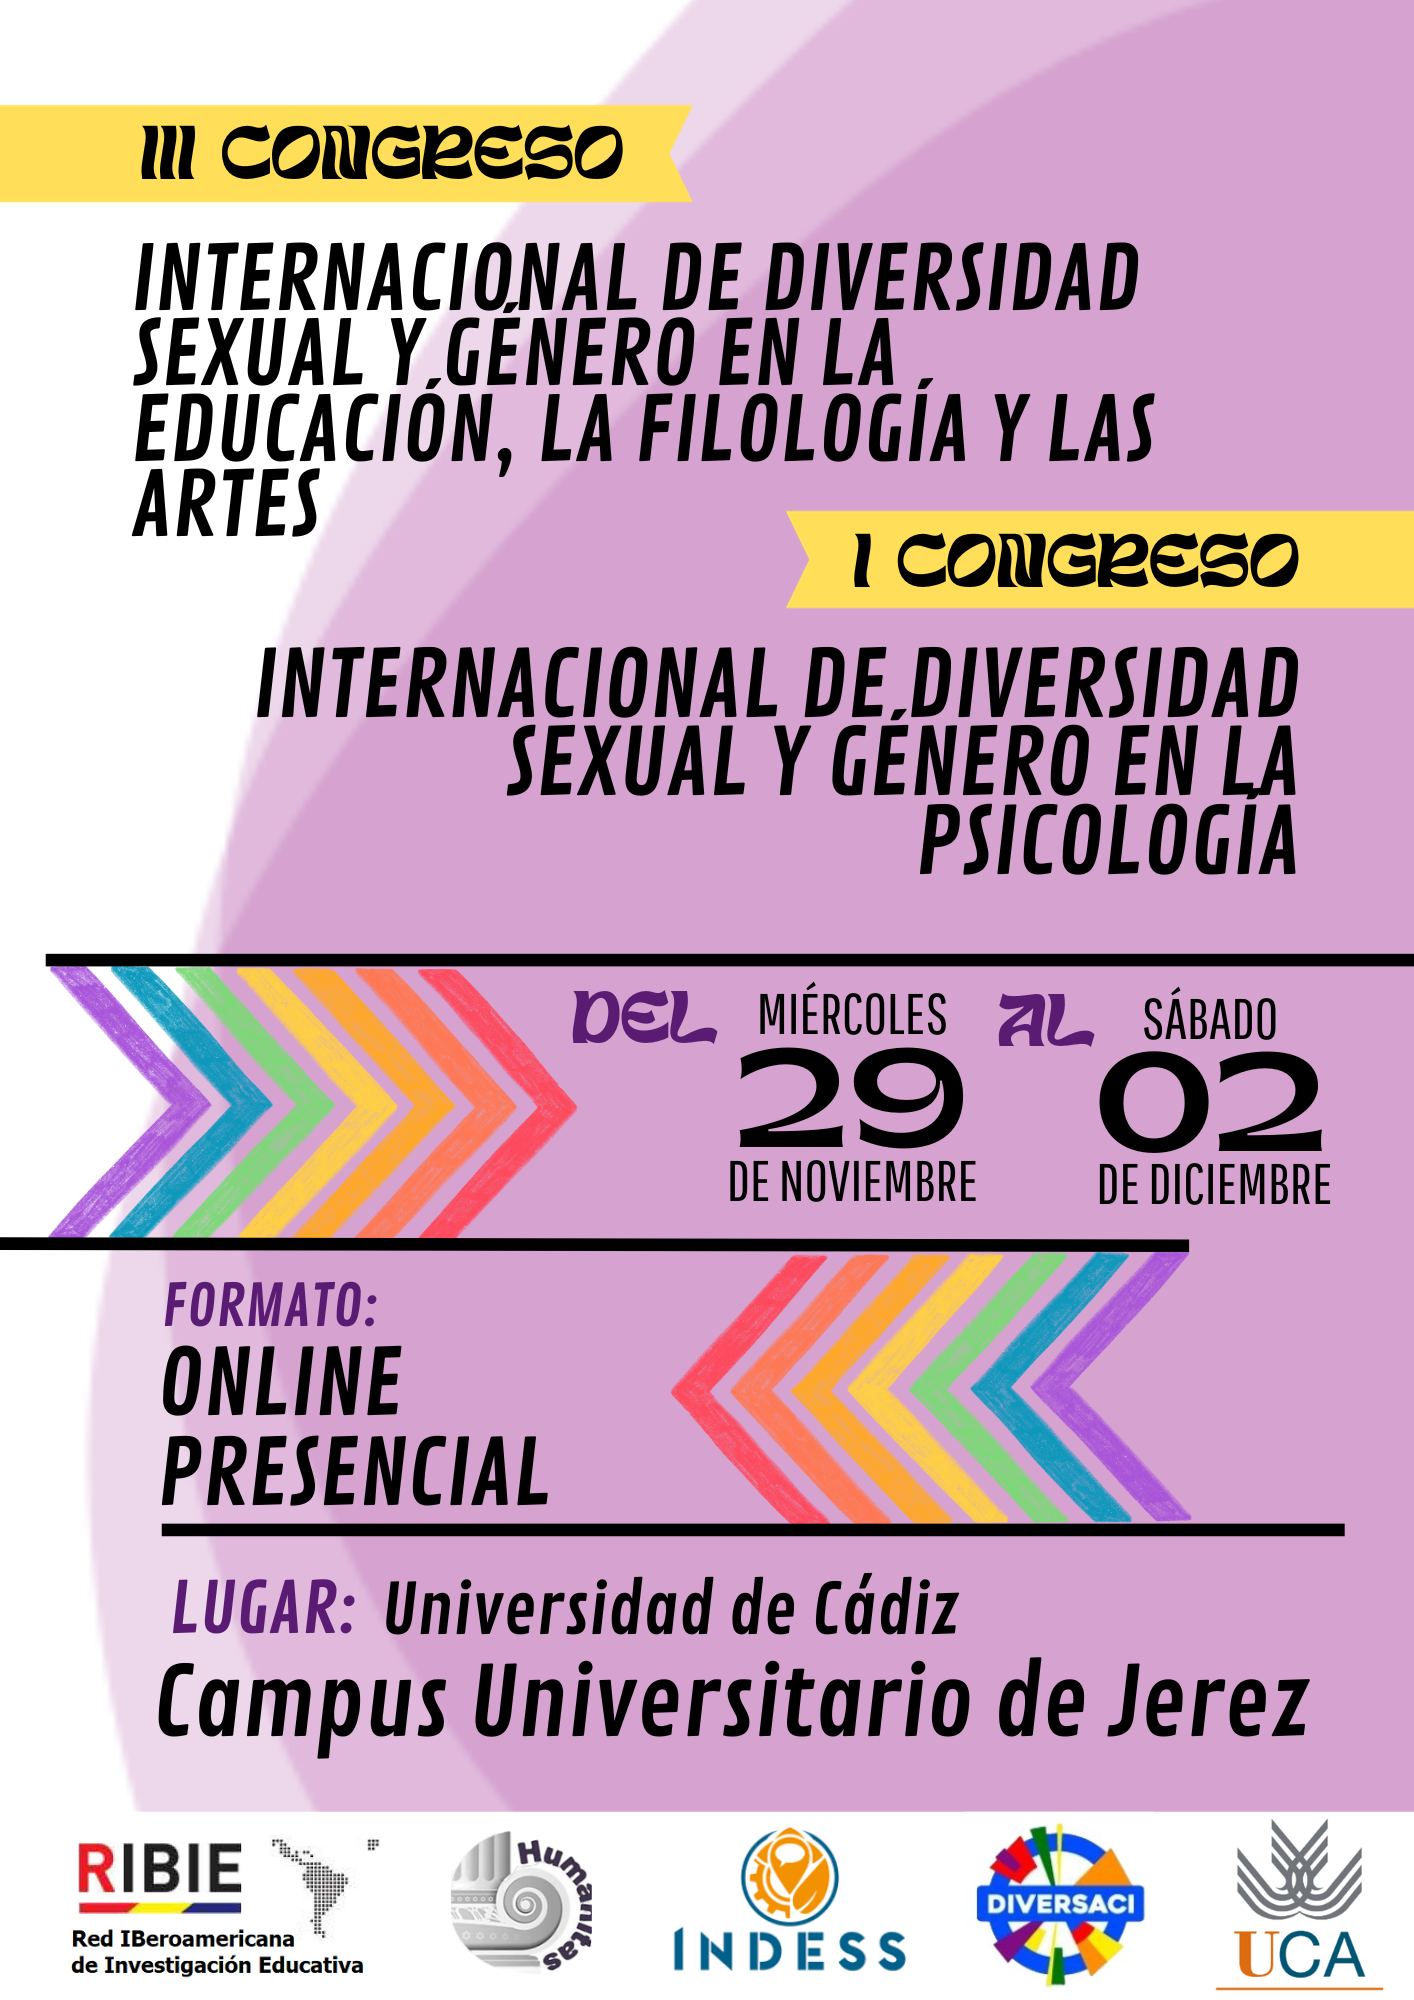 III Congreso Internacional de Diversidad Sexual y Género en la Educación, la Filología y las Artes y I Congreso Internacional de Diversidad Sexual y Género en la Psicología